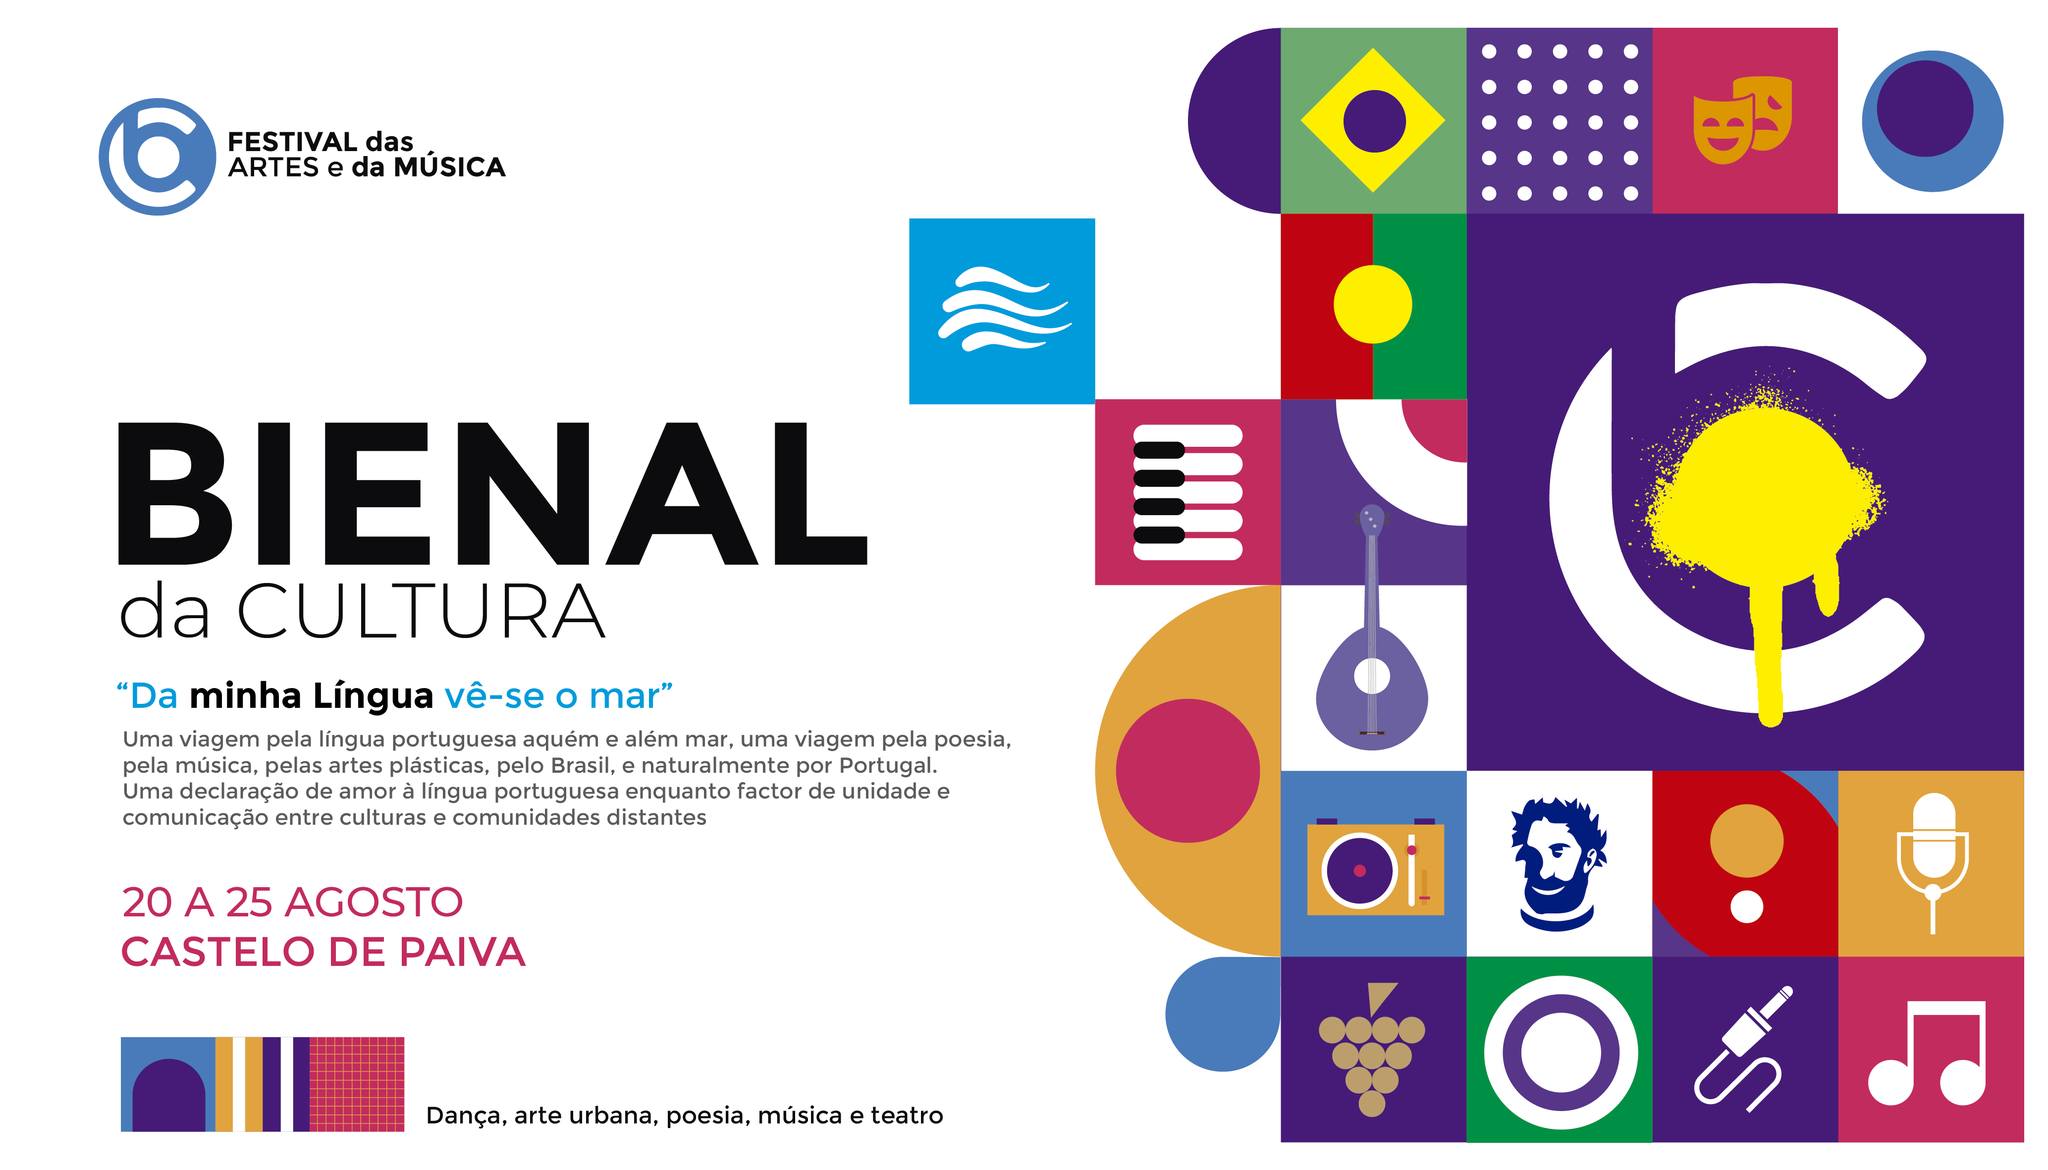 Bienal da Cultura 2023 - Castelo de Paiva